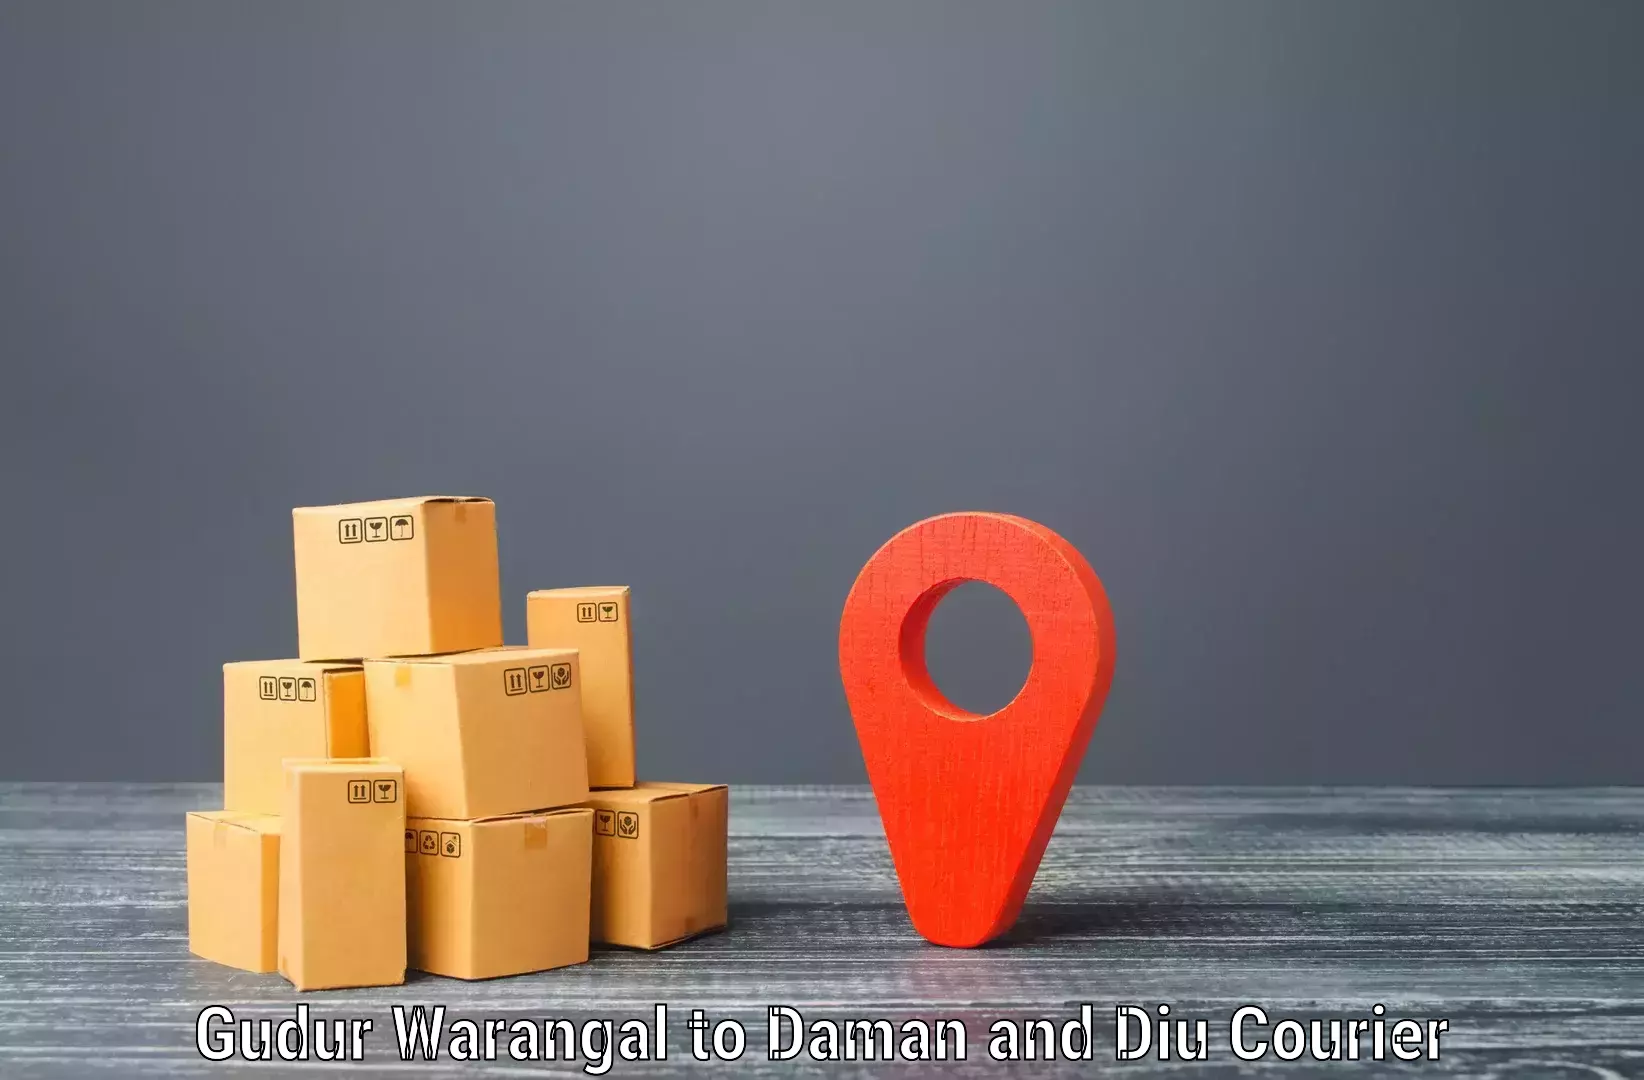 Sustainable shipping practices Gudur Warangal to Daman